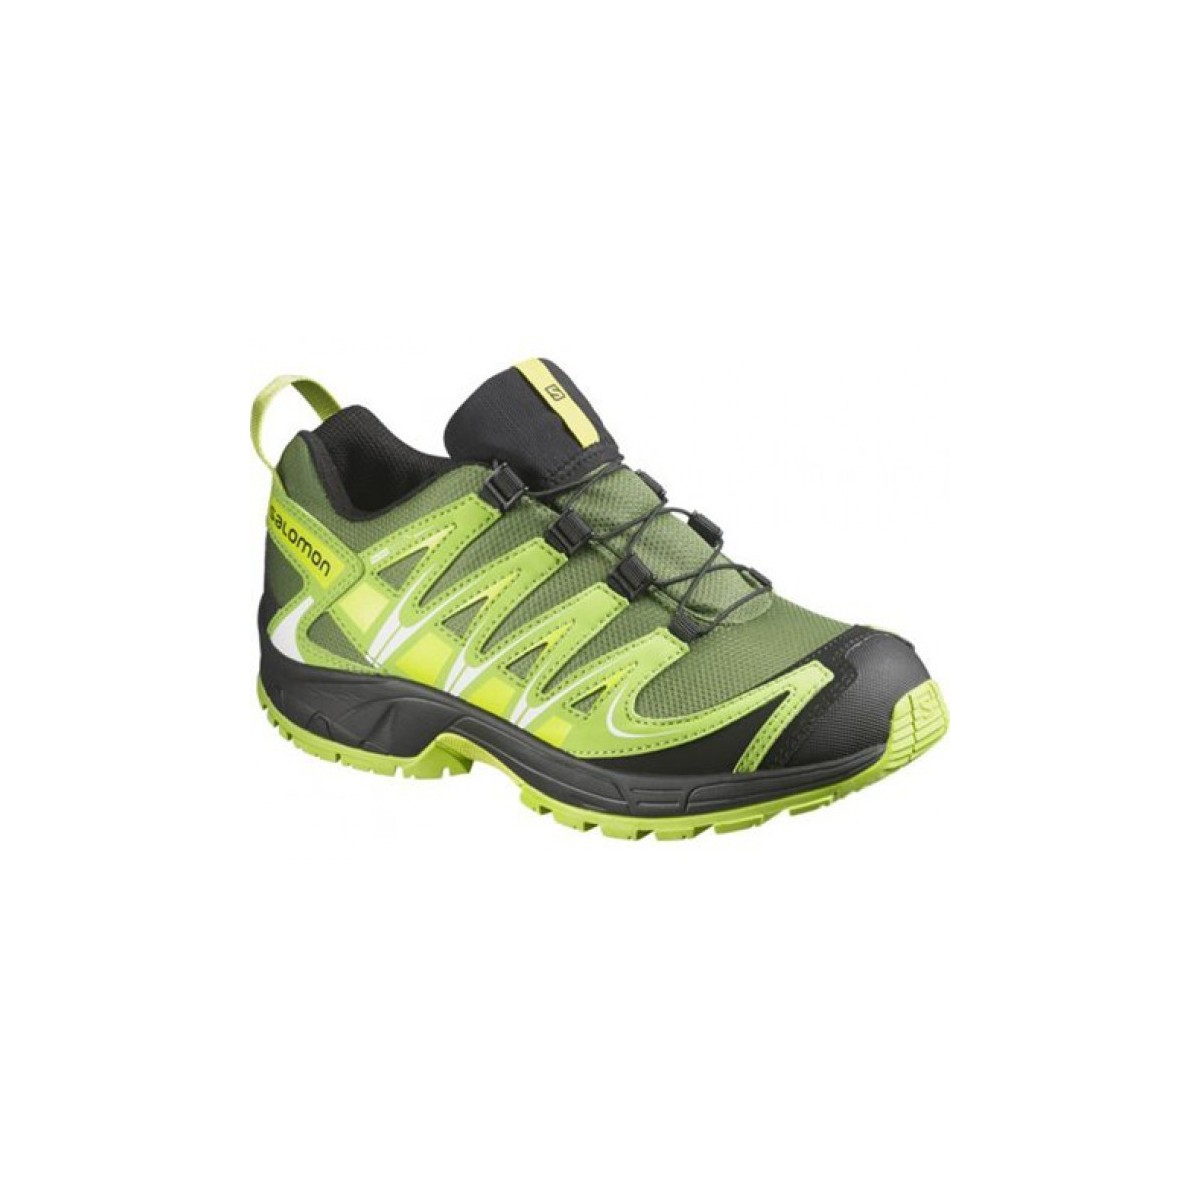 condensor Lief leer SALOMON running shoes XA Pro 3D CSWP J black/green